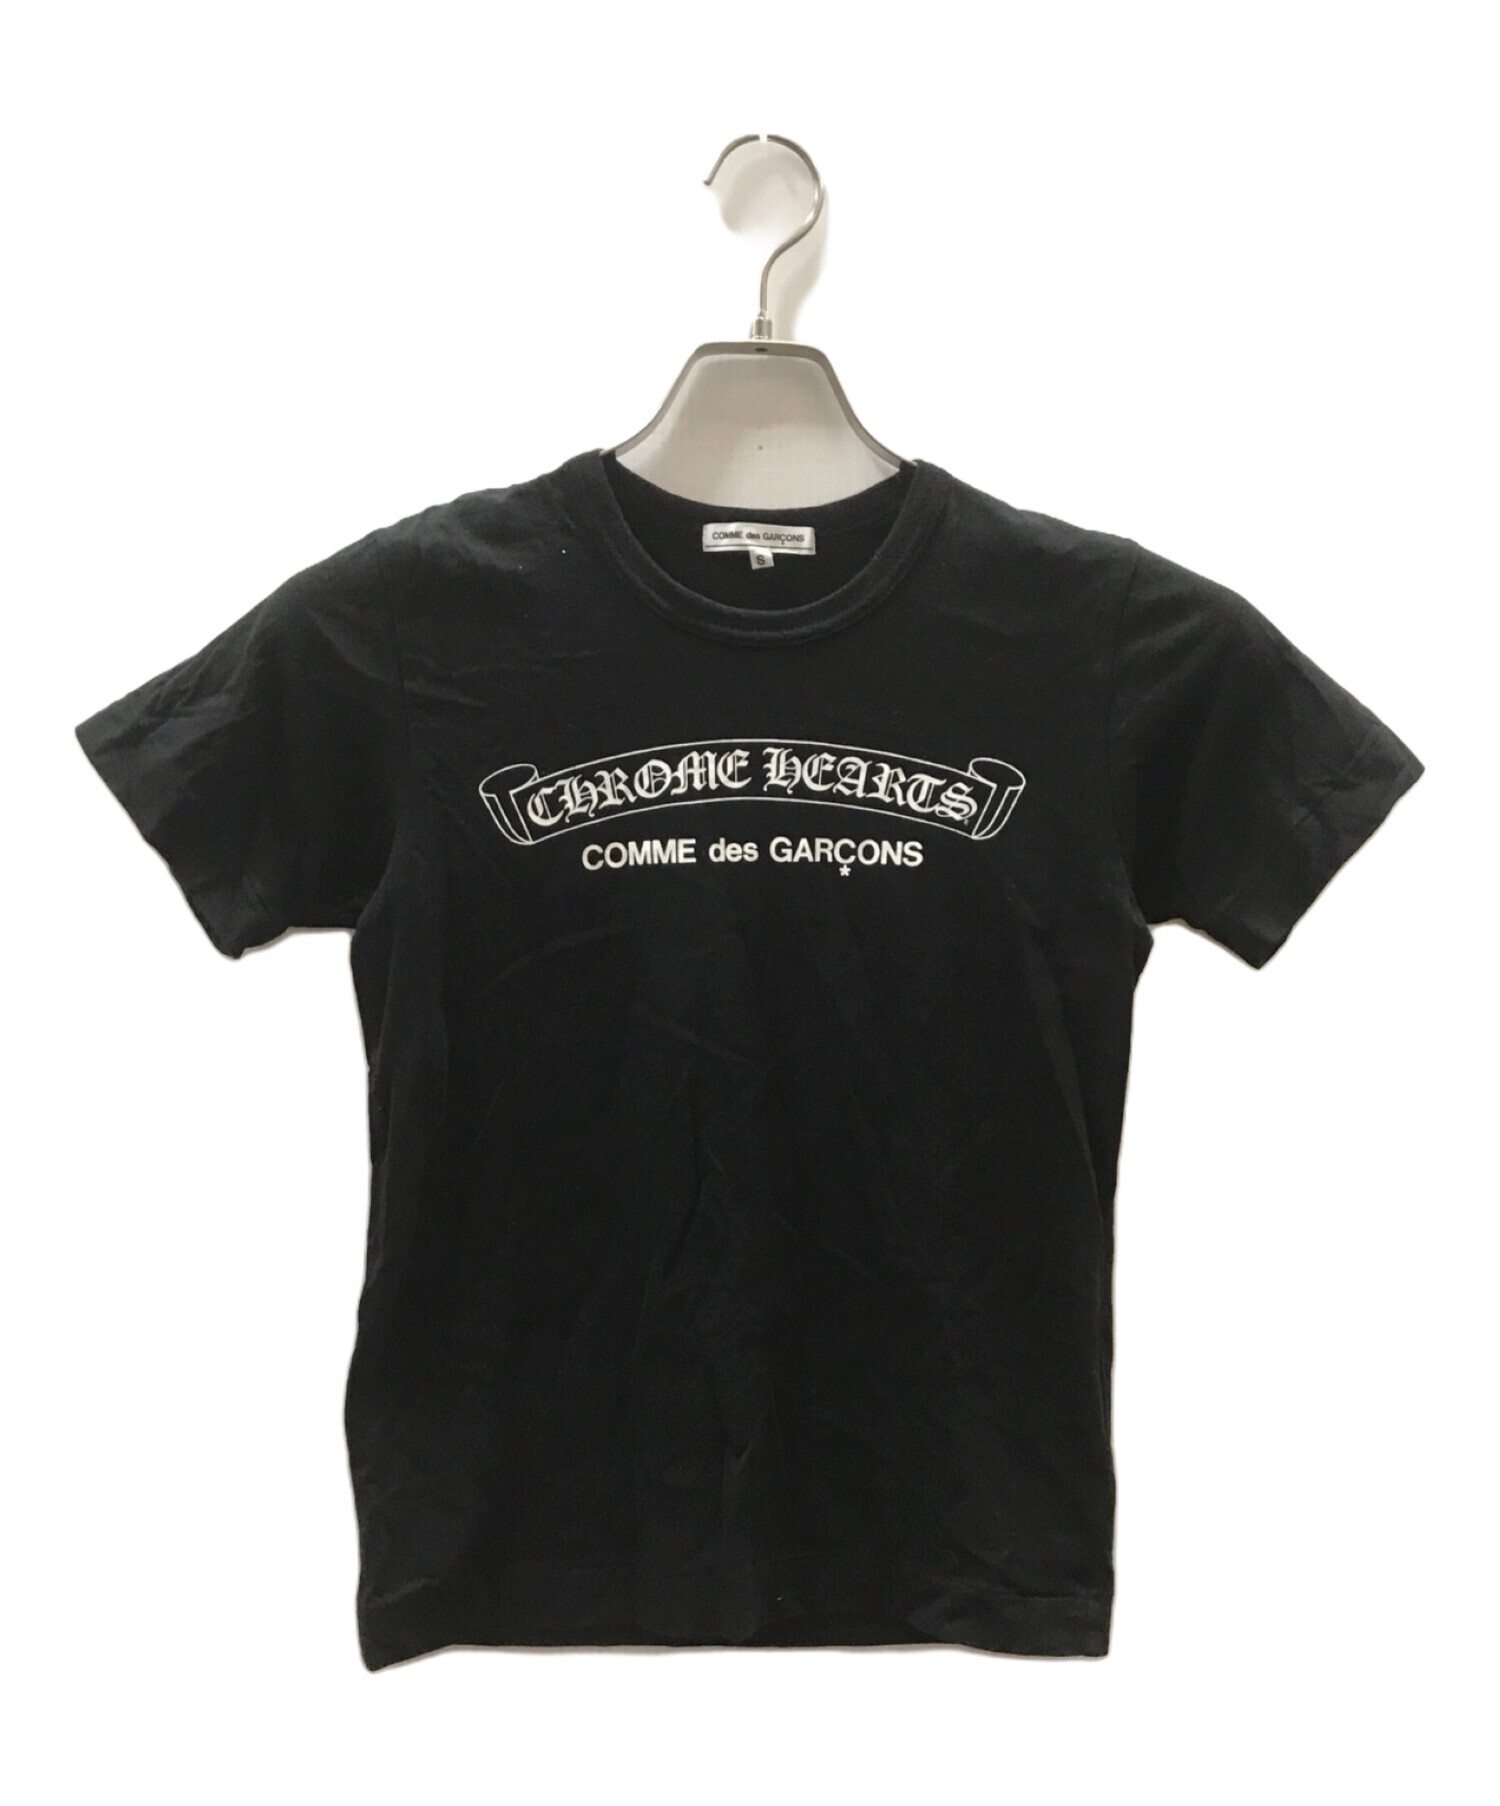 COMME des GARCONS (コムデギャルソン) CHROME HEARTS (クロムハーツ) Tシャツ ブラック サイズ:S